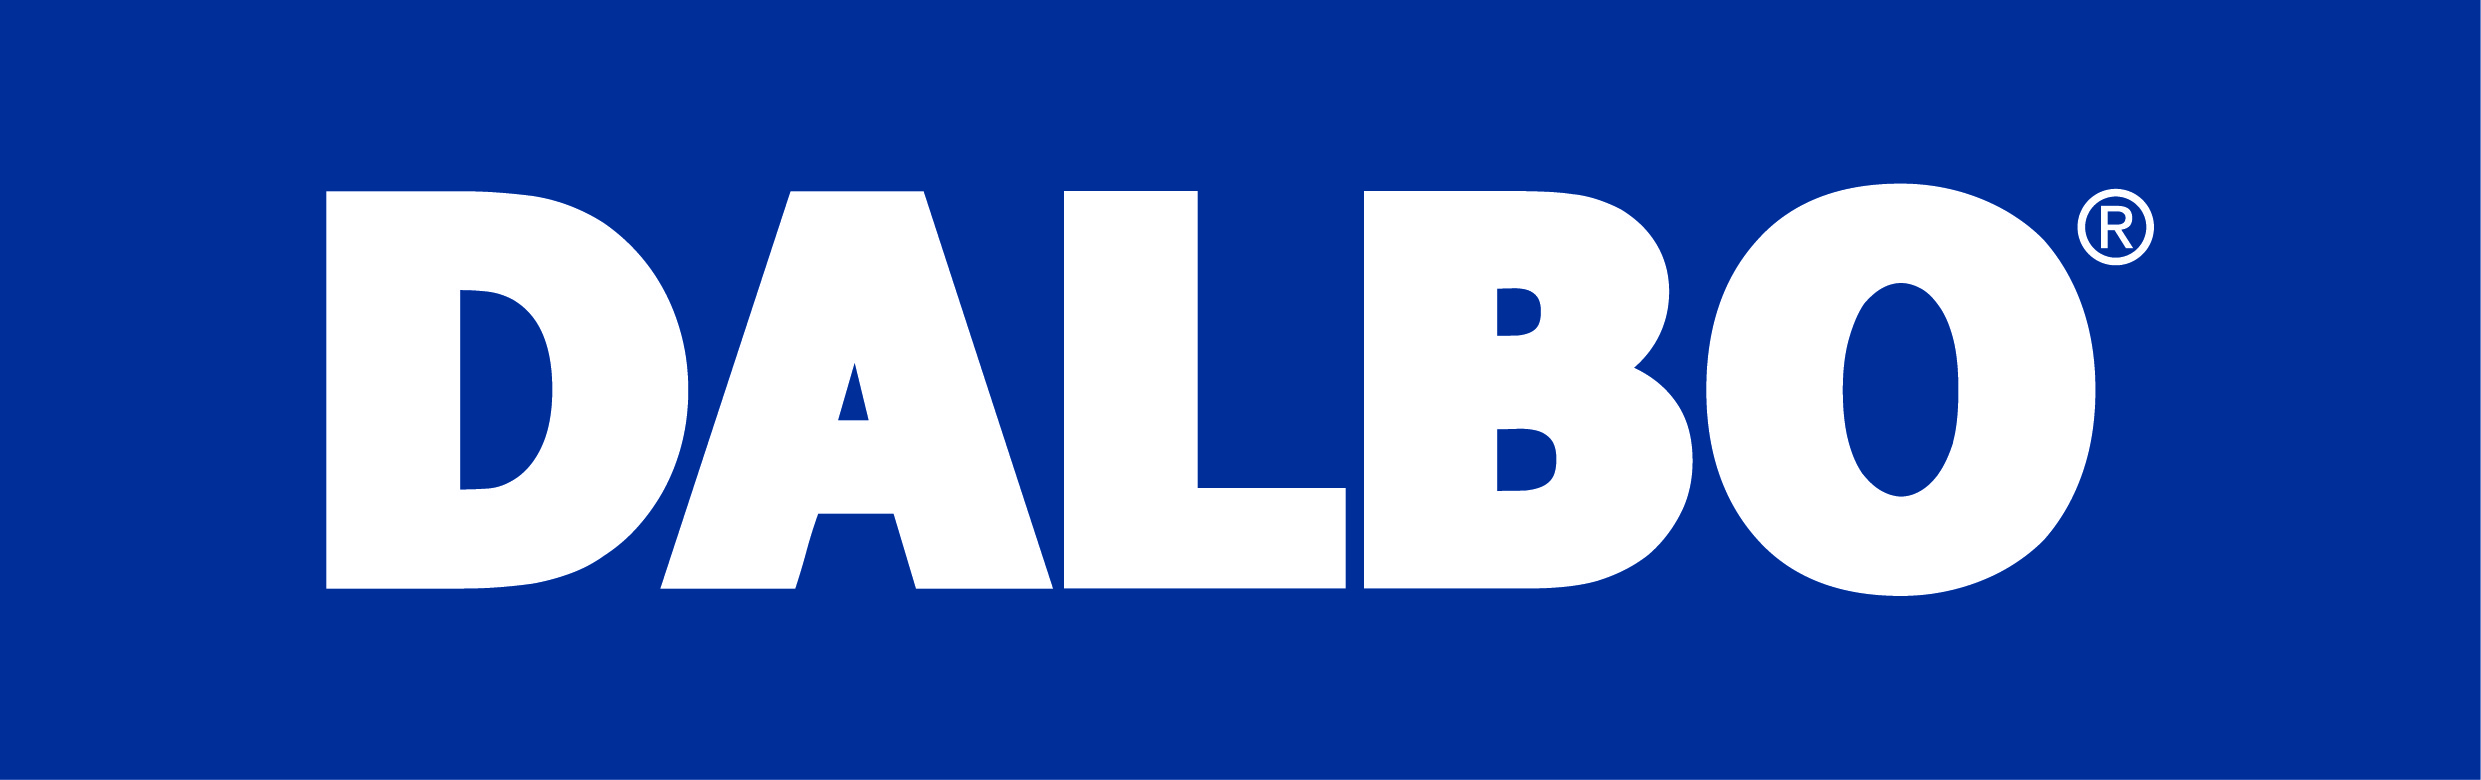 Dalbo_logo